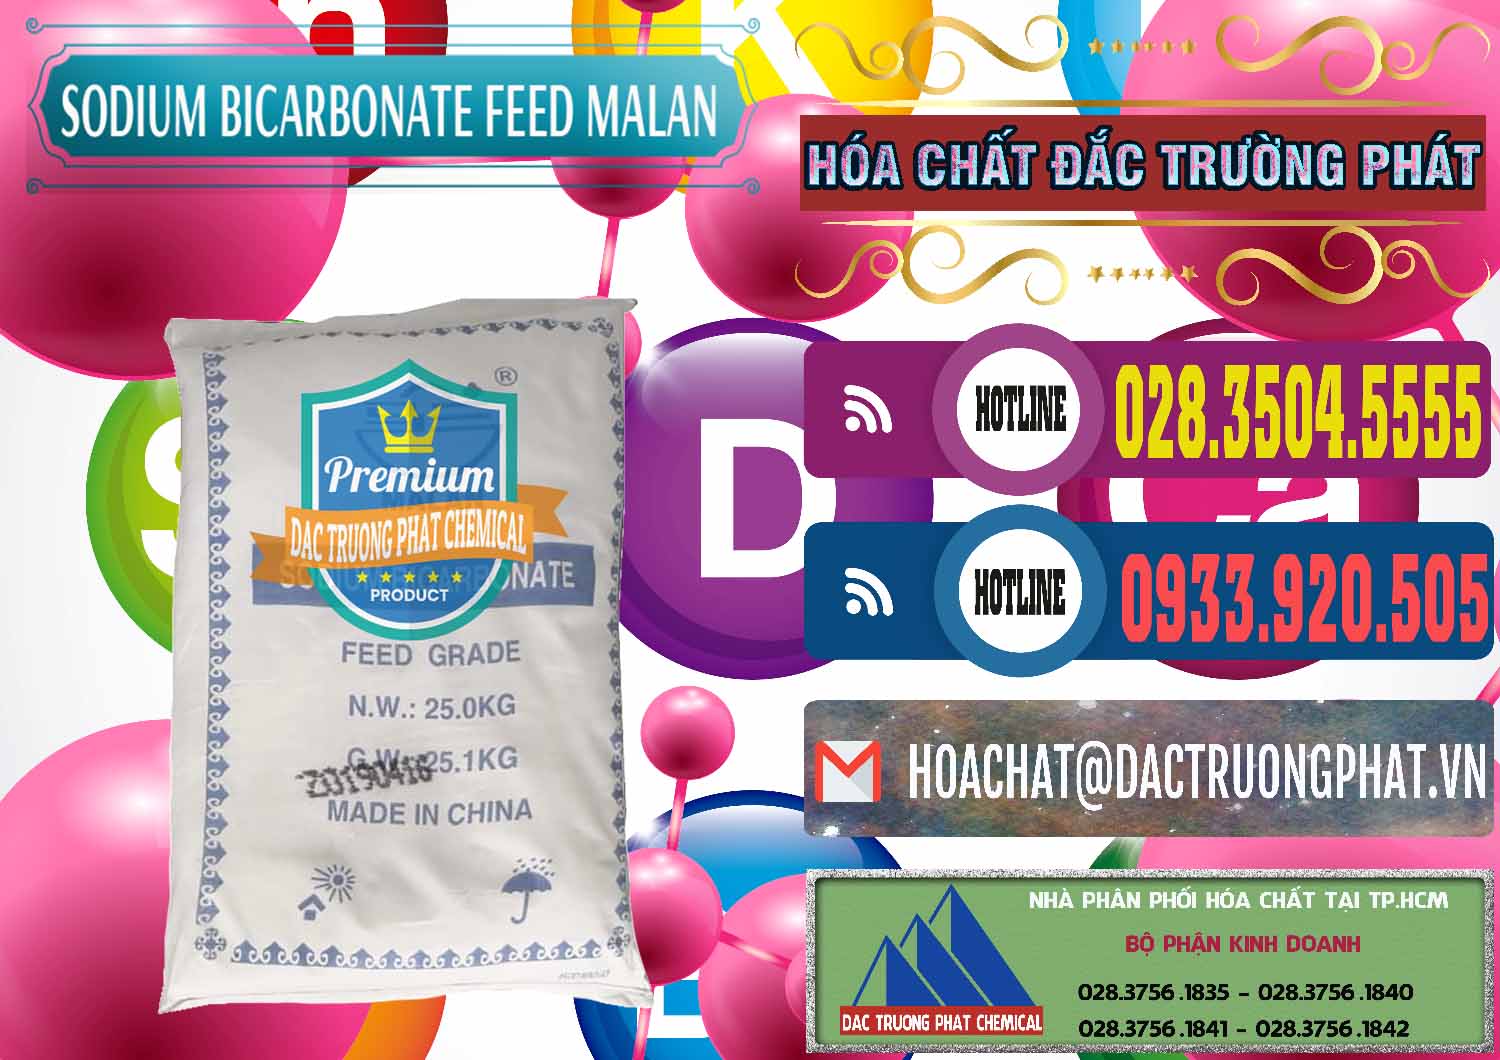 Đơn vị chuyên kinh doanh & bán Sodium Bicarbonate – Bicar NaHCO3 Feed Grade Malan Trung Quốc China - 0262 - Nơi chuyên kinh doanh & cung cấp hóa chất tại TP.HCM - muabanhoachat.com.vn